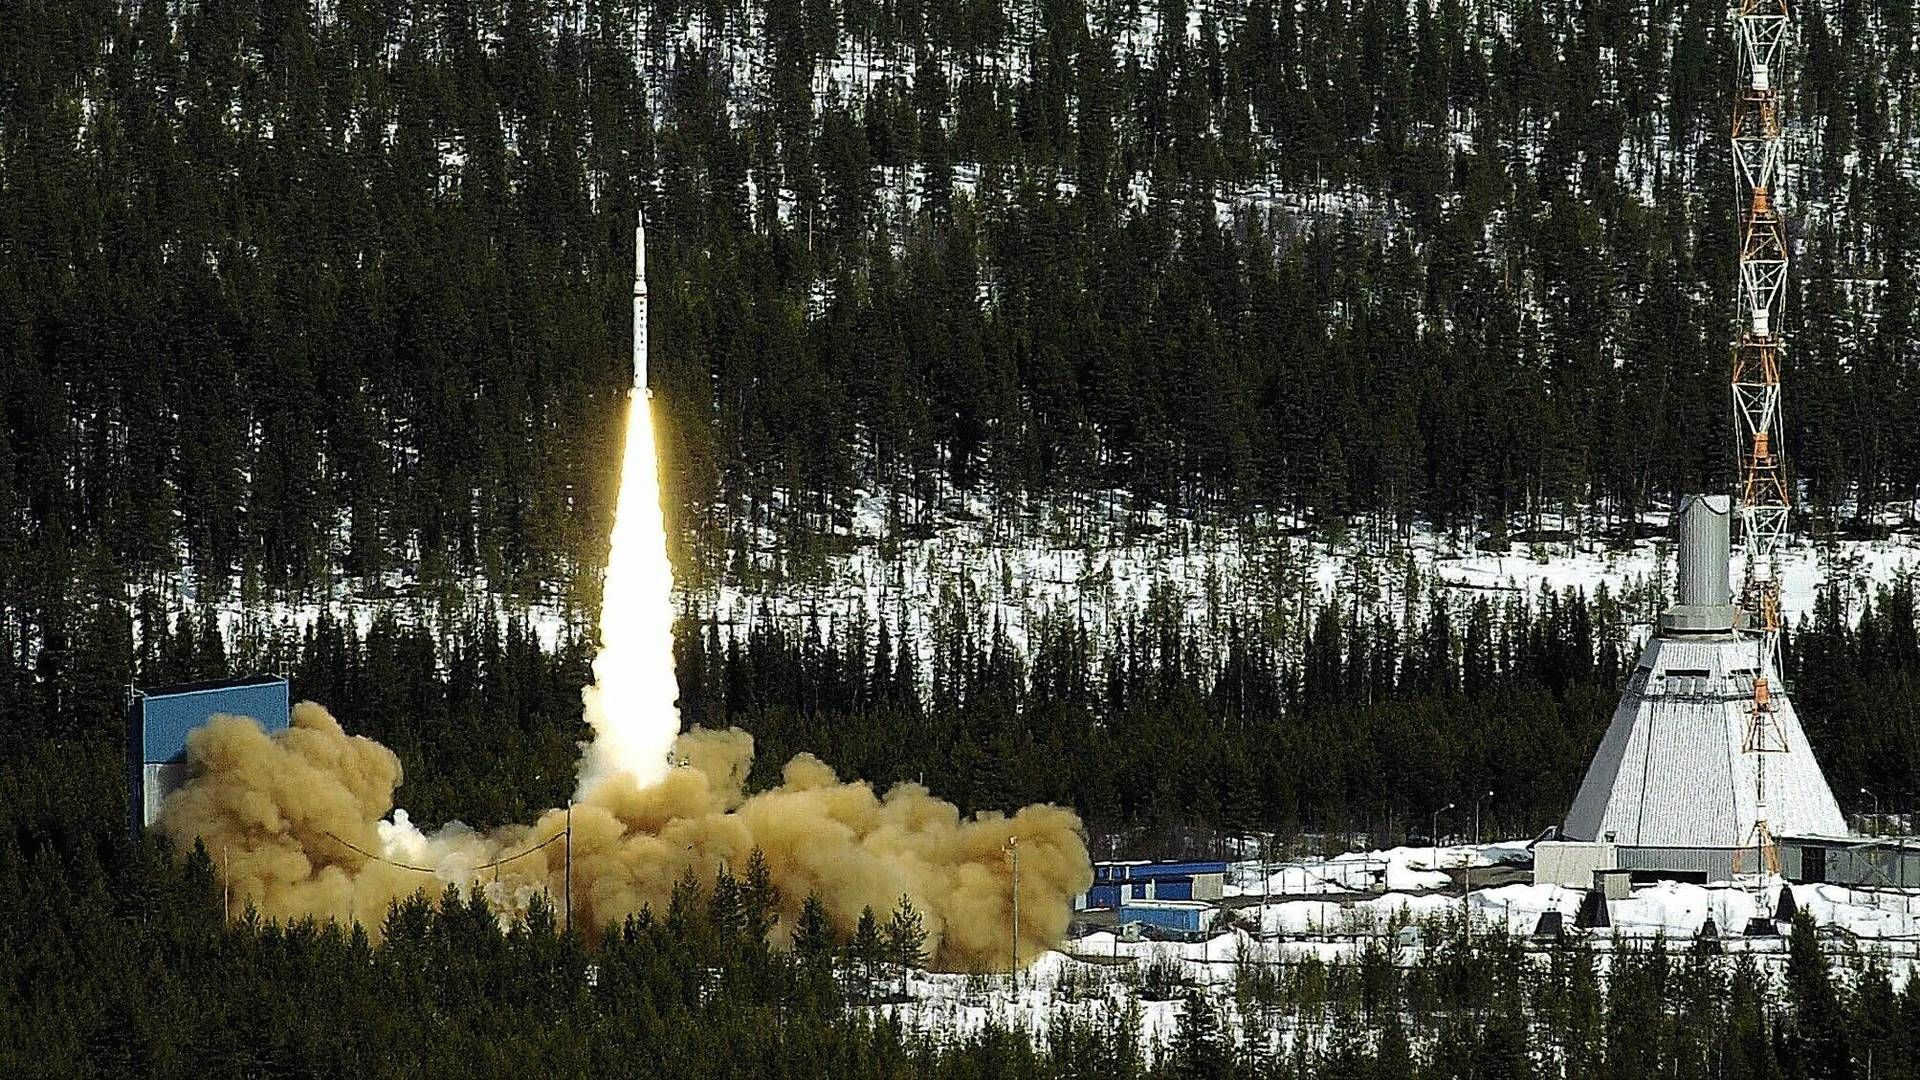 RAKETTFORSKNING: Svenske forskere har sikret forskningen sin en plass ombord på raketten Suborbital Express 3 som skal skytes opp fra Esrange Space Center i Kiruna. Her fra oppskytningen av Maxus 4 fra samme base i 2001. | Foto: Roland S. Lundstrøm / NTB SCANPIX